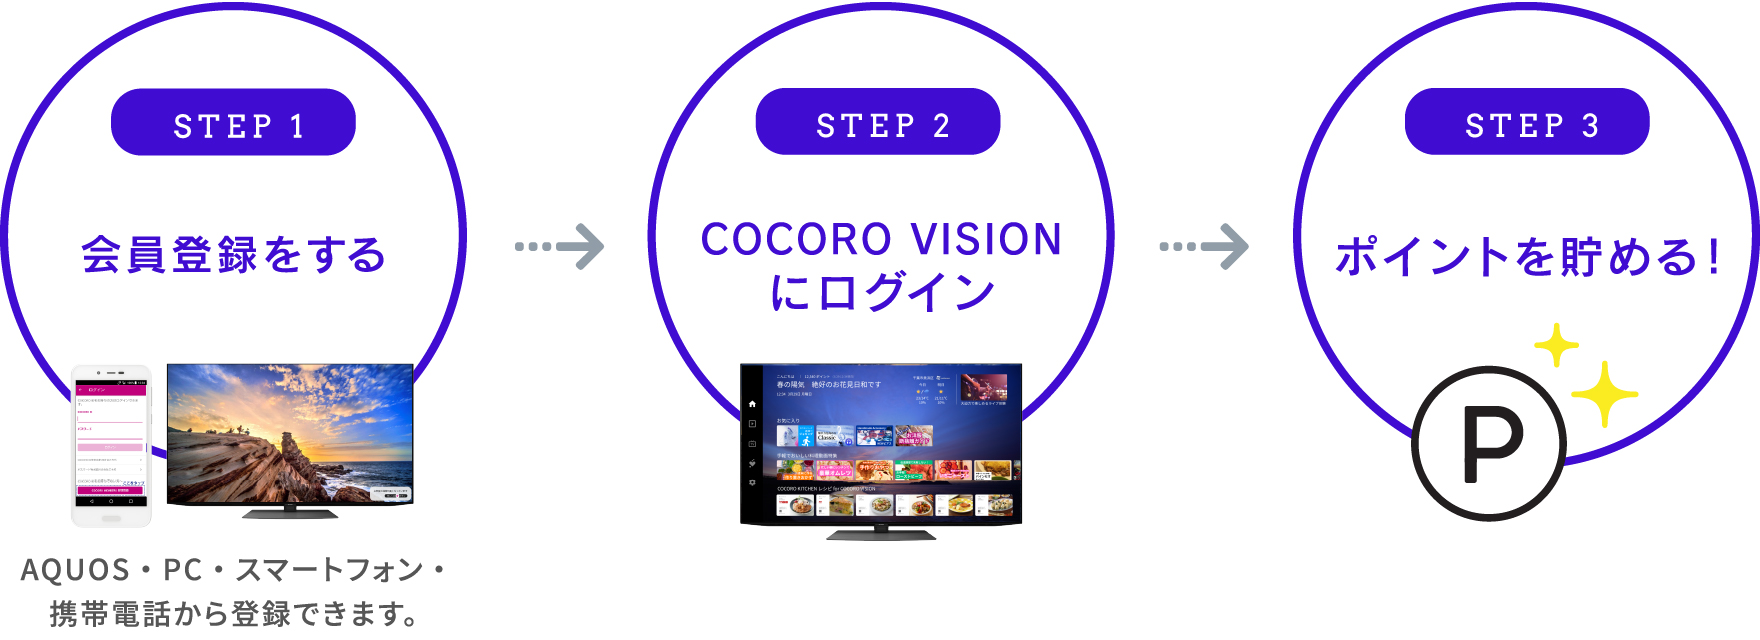 STEP1 会員登録をする STEP2 COCORO VISIONにログイン STEP3 ポイントを貯める！